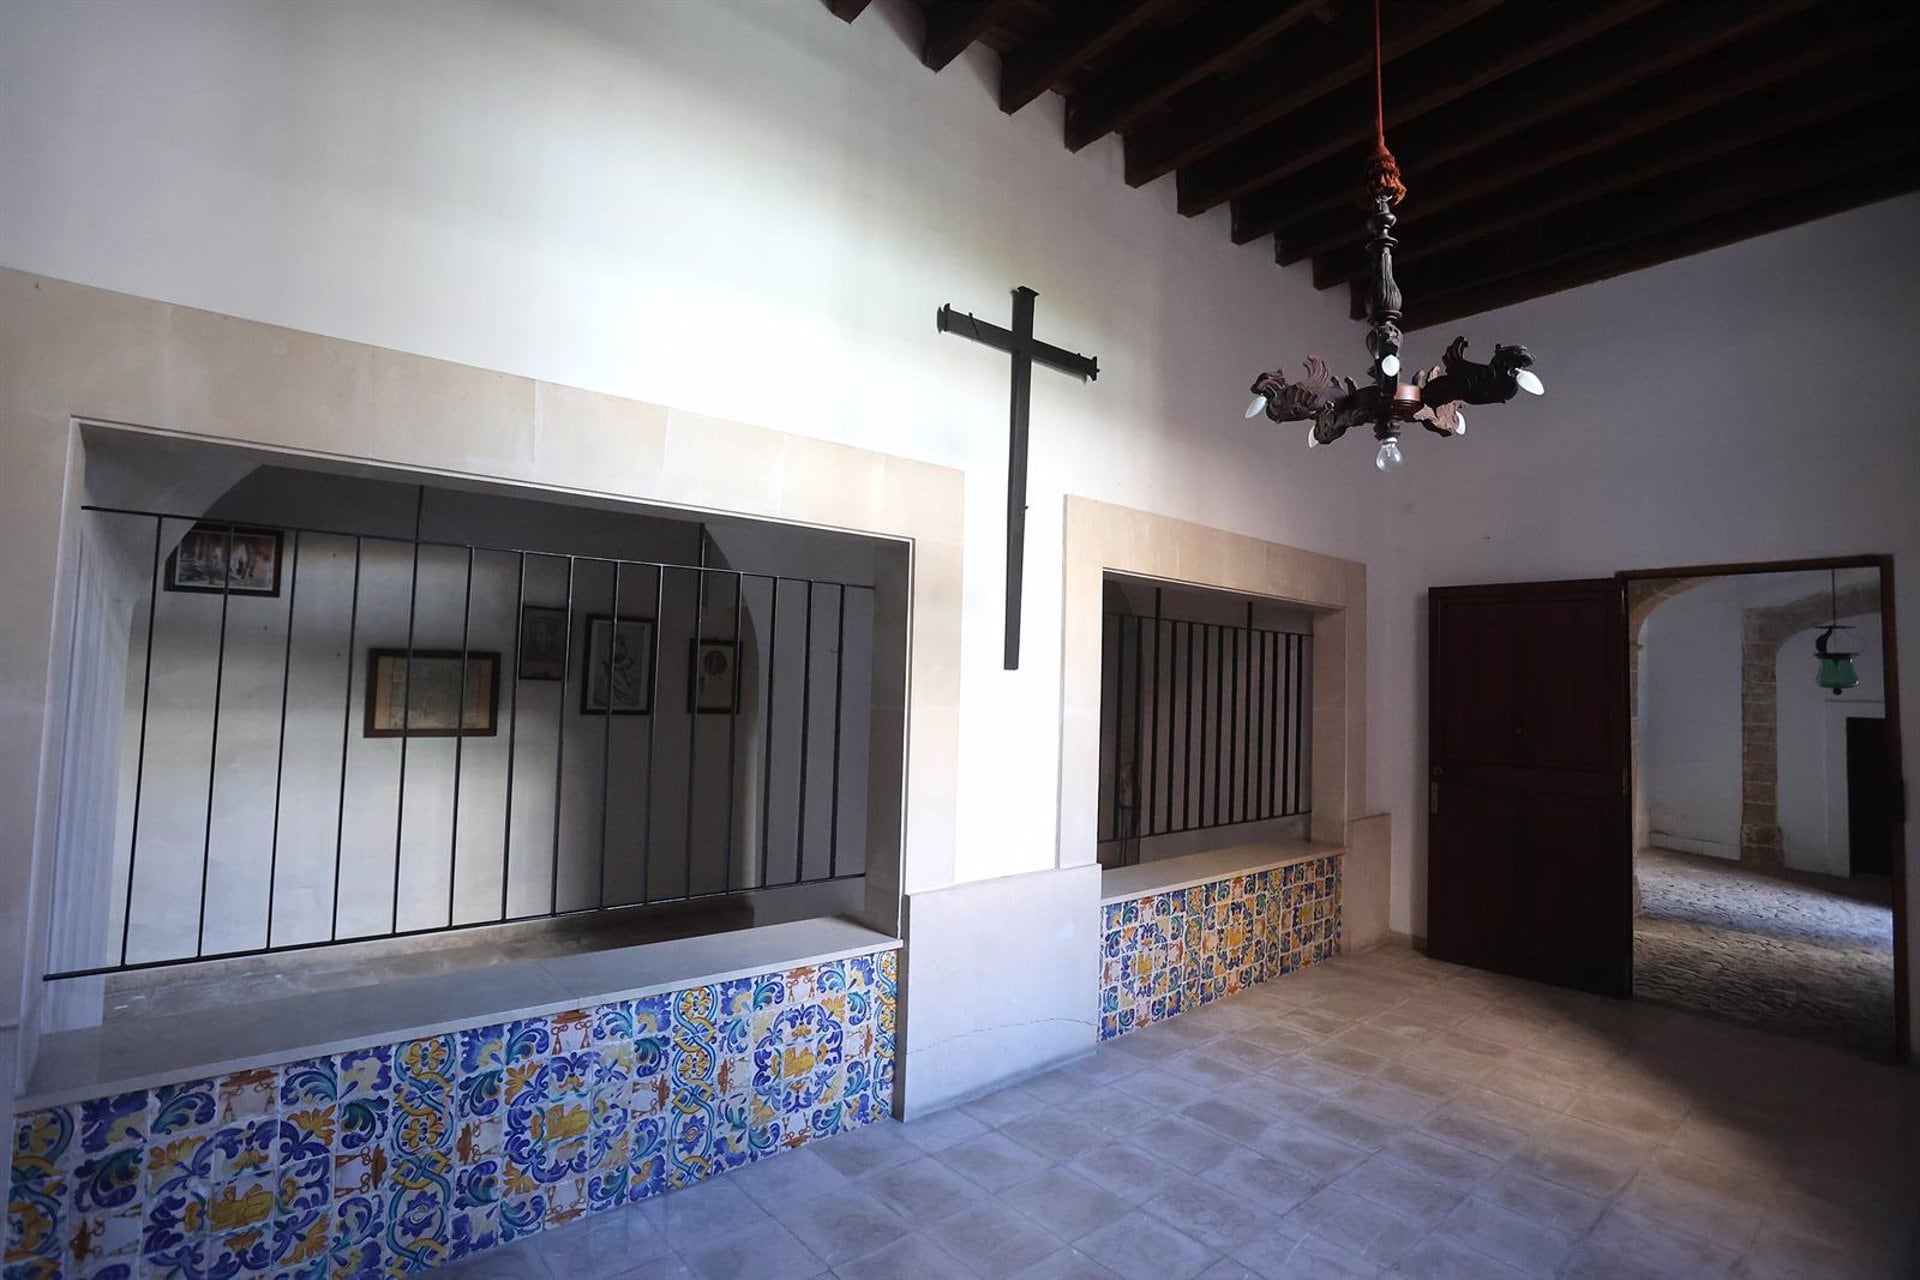 Monjas Jerónimas expresan “profundo pesar” por el recurso del Obispado de Mallorca contra la sentencia del monasterio